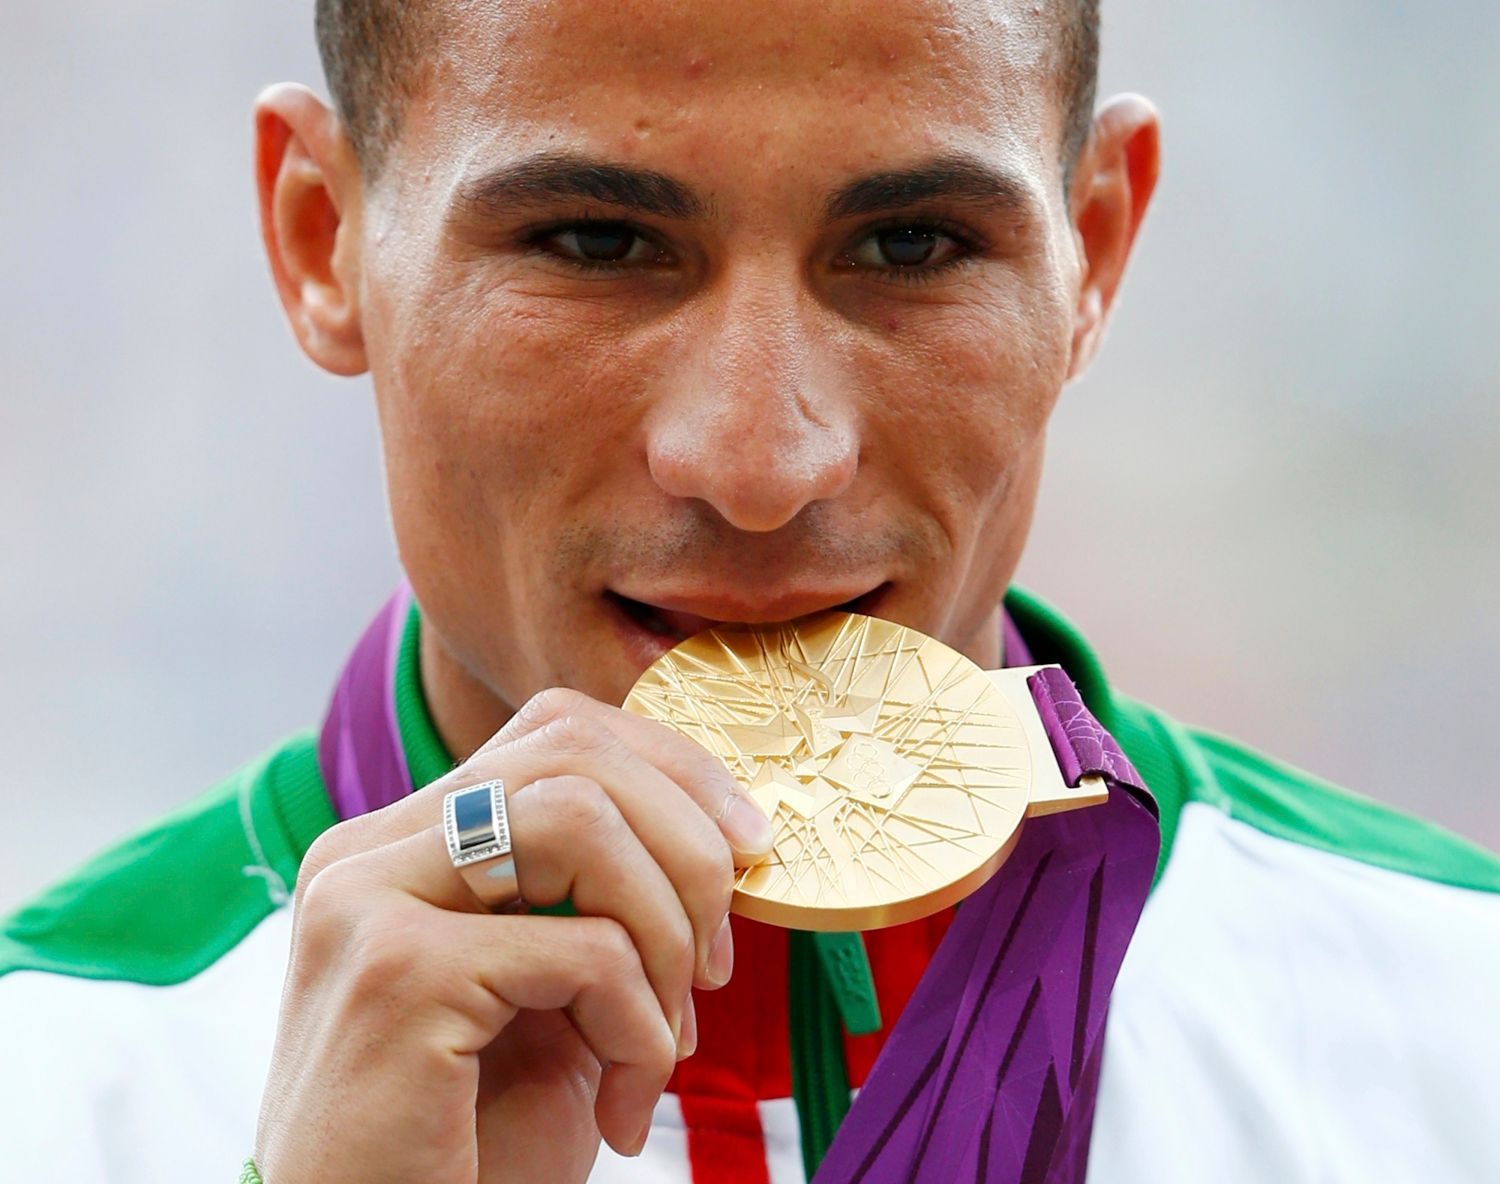 Alžírský běžec Taufik Makhloufi se raduje za zlaté medaile za běh na 1500 metrů na OH 2012 v Londýně.